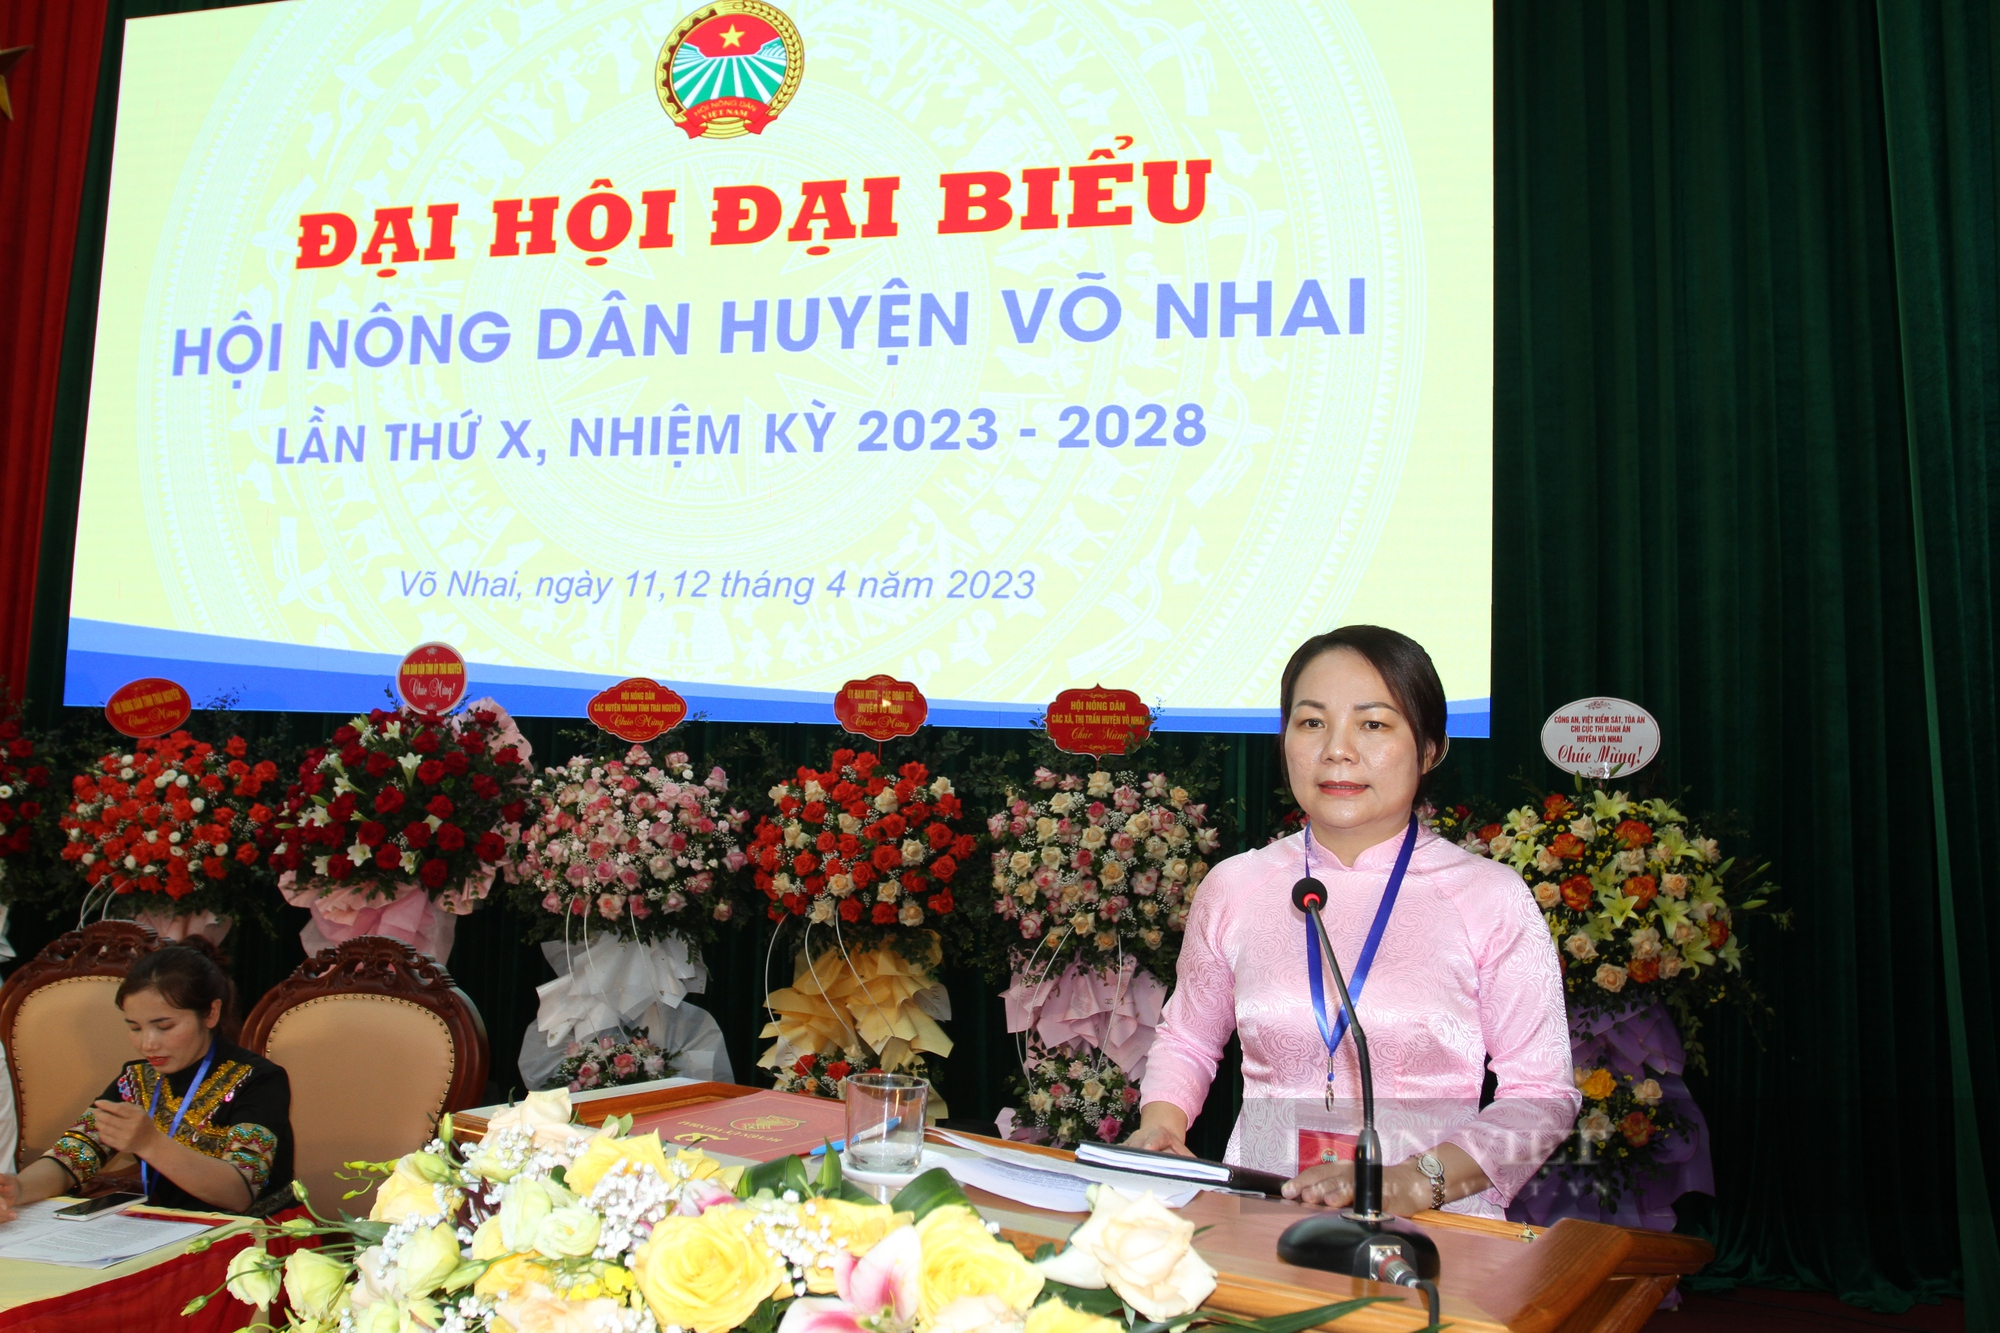 Khai mạc Đại hội đại biểu HND huyện Võ Nhai lần thứ X, bà Triệu Thị Nhinh tái đắc cử chức danh Chủ tịch - Ảnh 4.